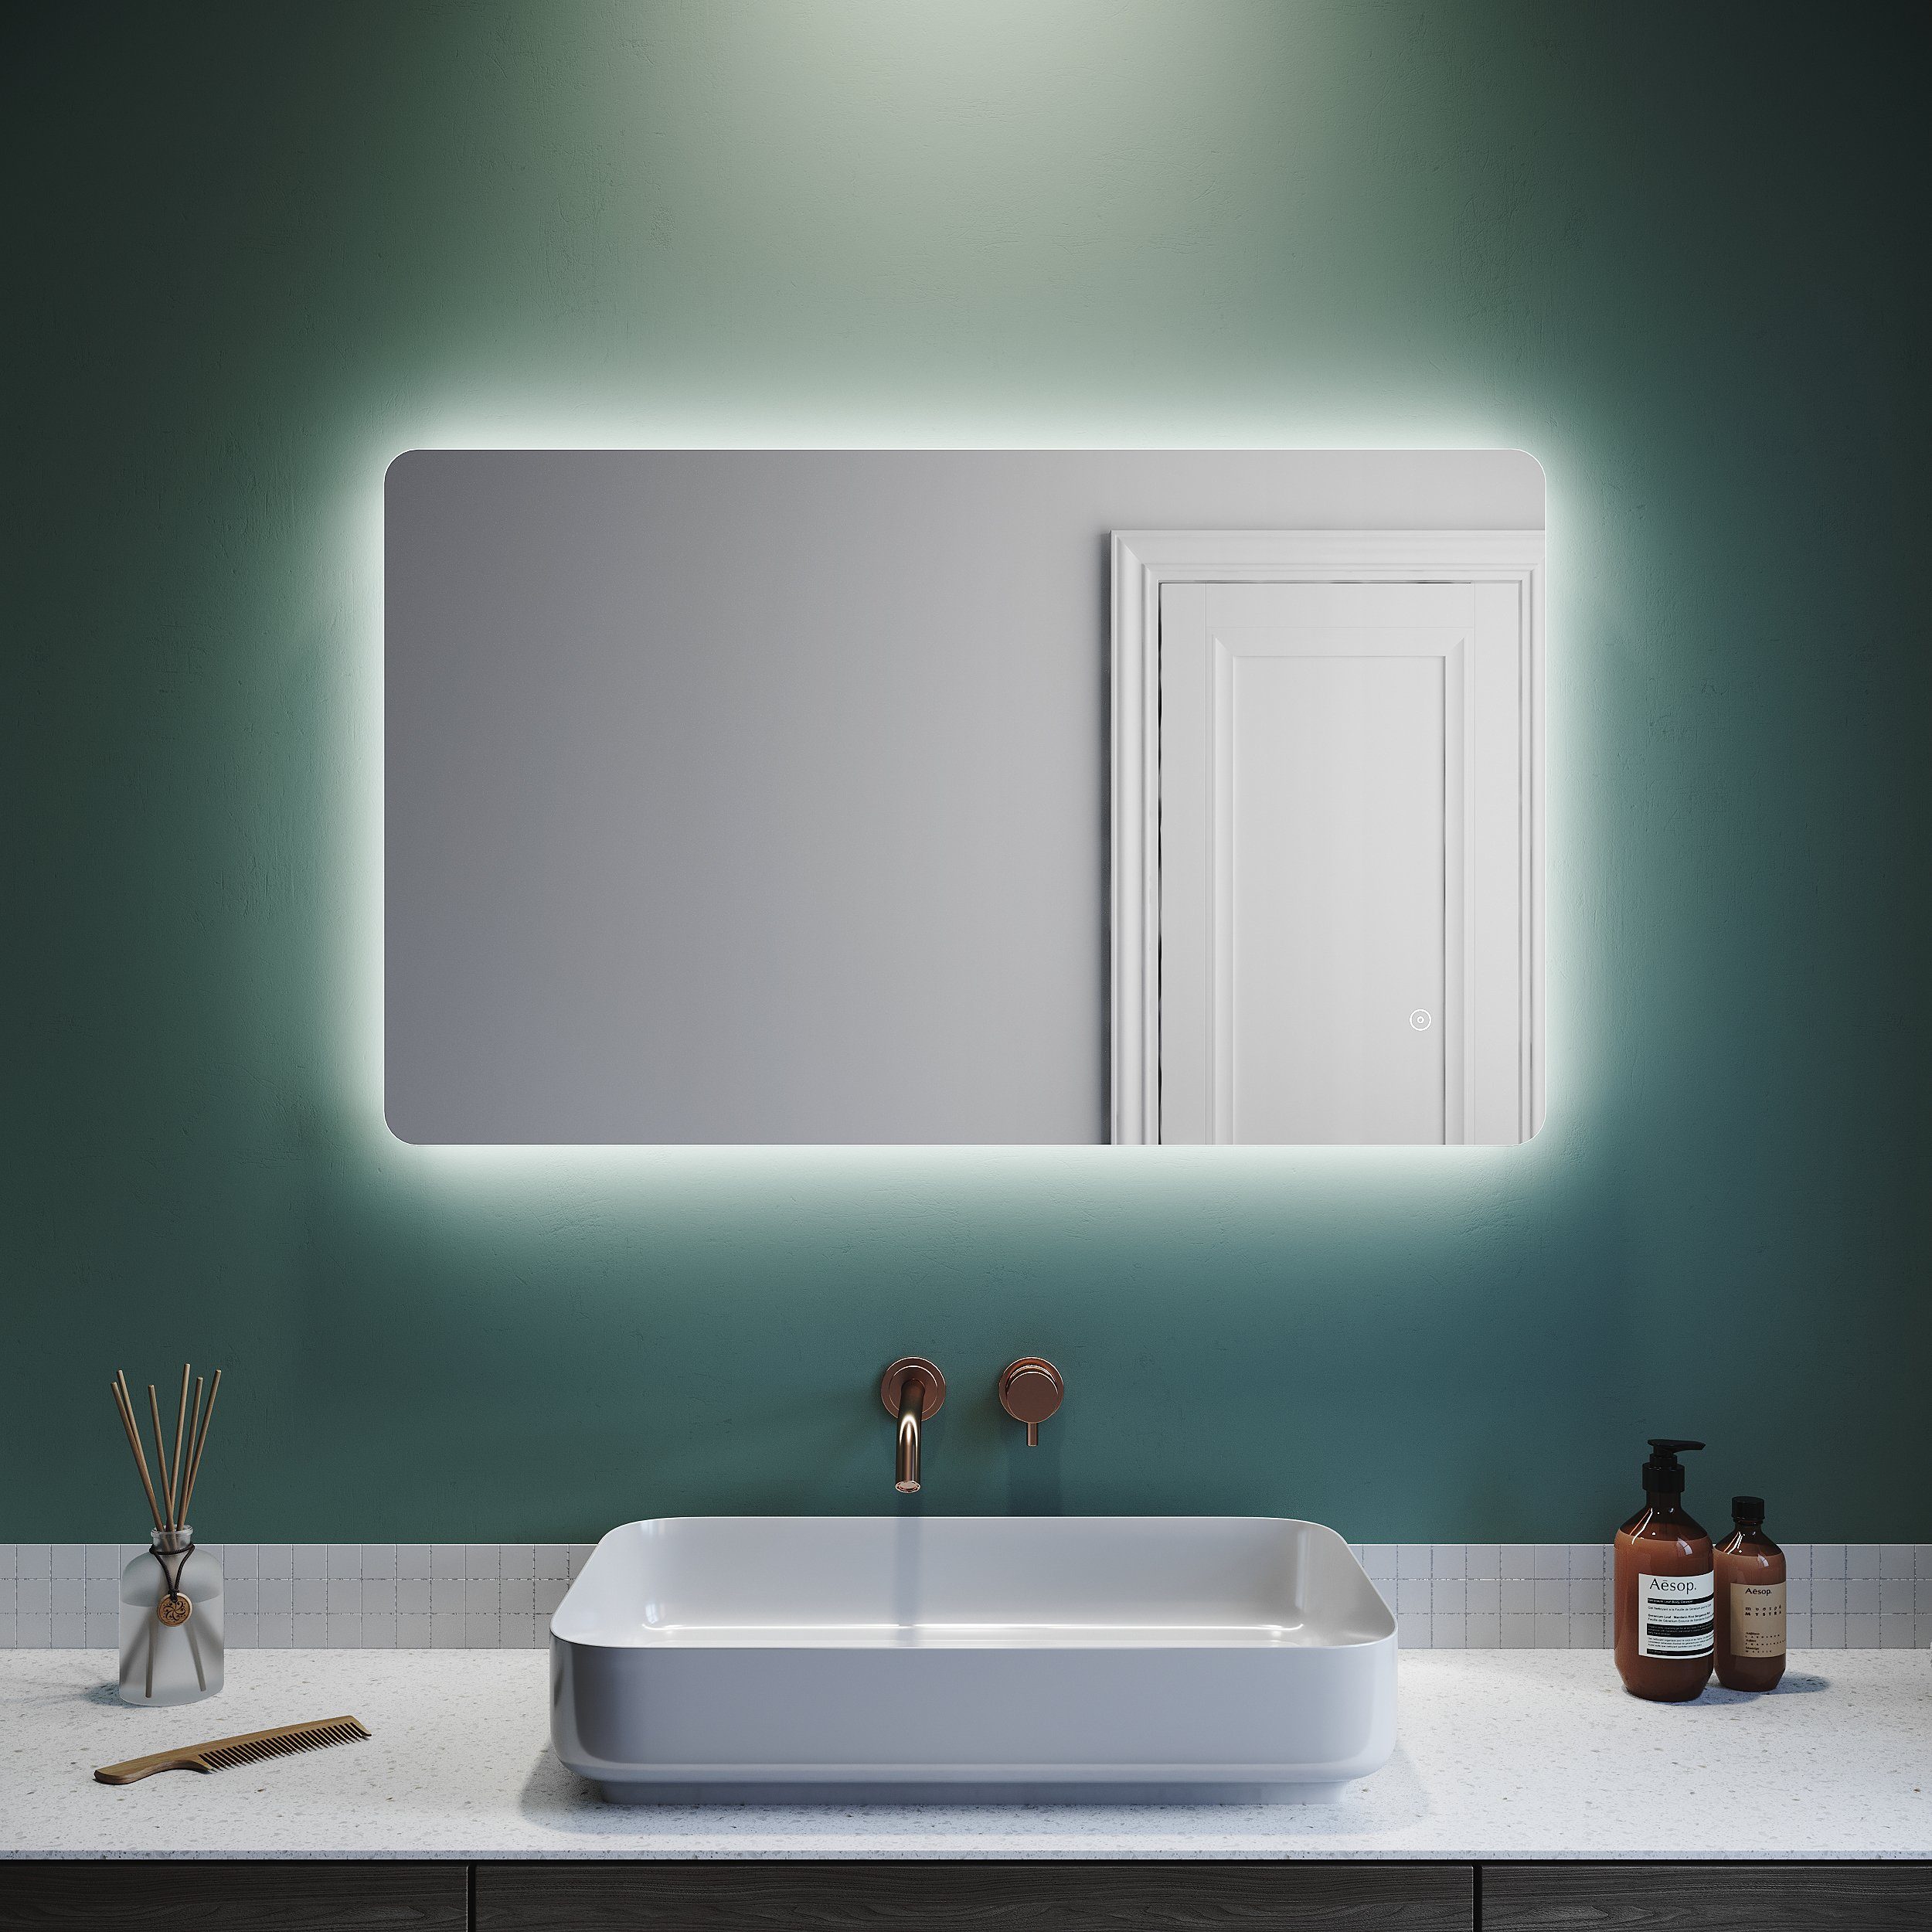 SONNI Badspiegel Badspiegel mit beleuchtung, 100 x 60 cm, kaltweiß, LED- Beleuchtung beschlagfrei Lichtspiegel LED Spiegel Wandspiegel mit  Touch-Schalter IP44 energiesparend